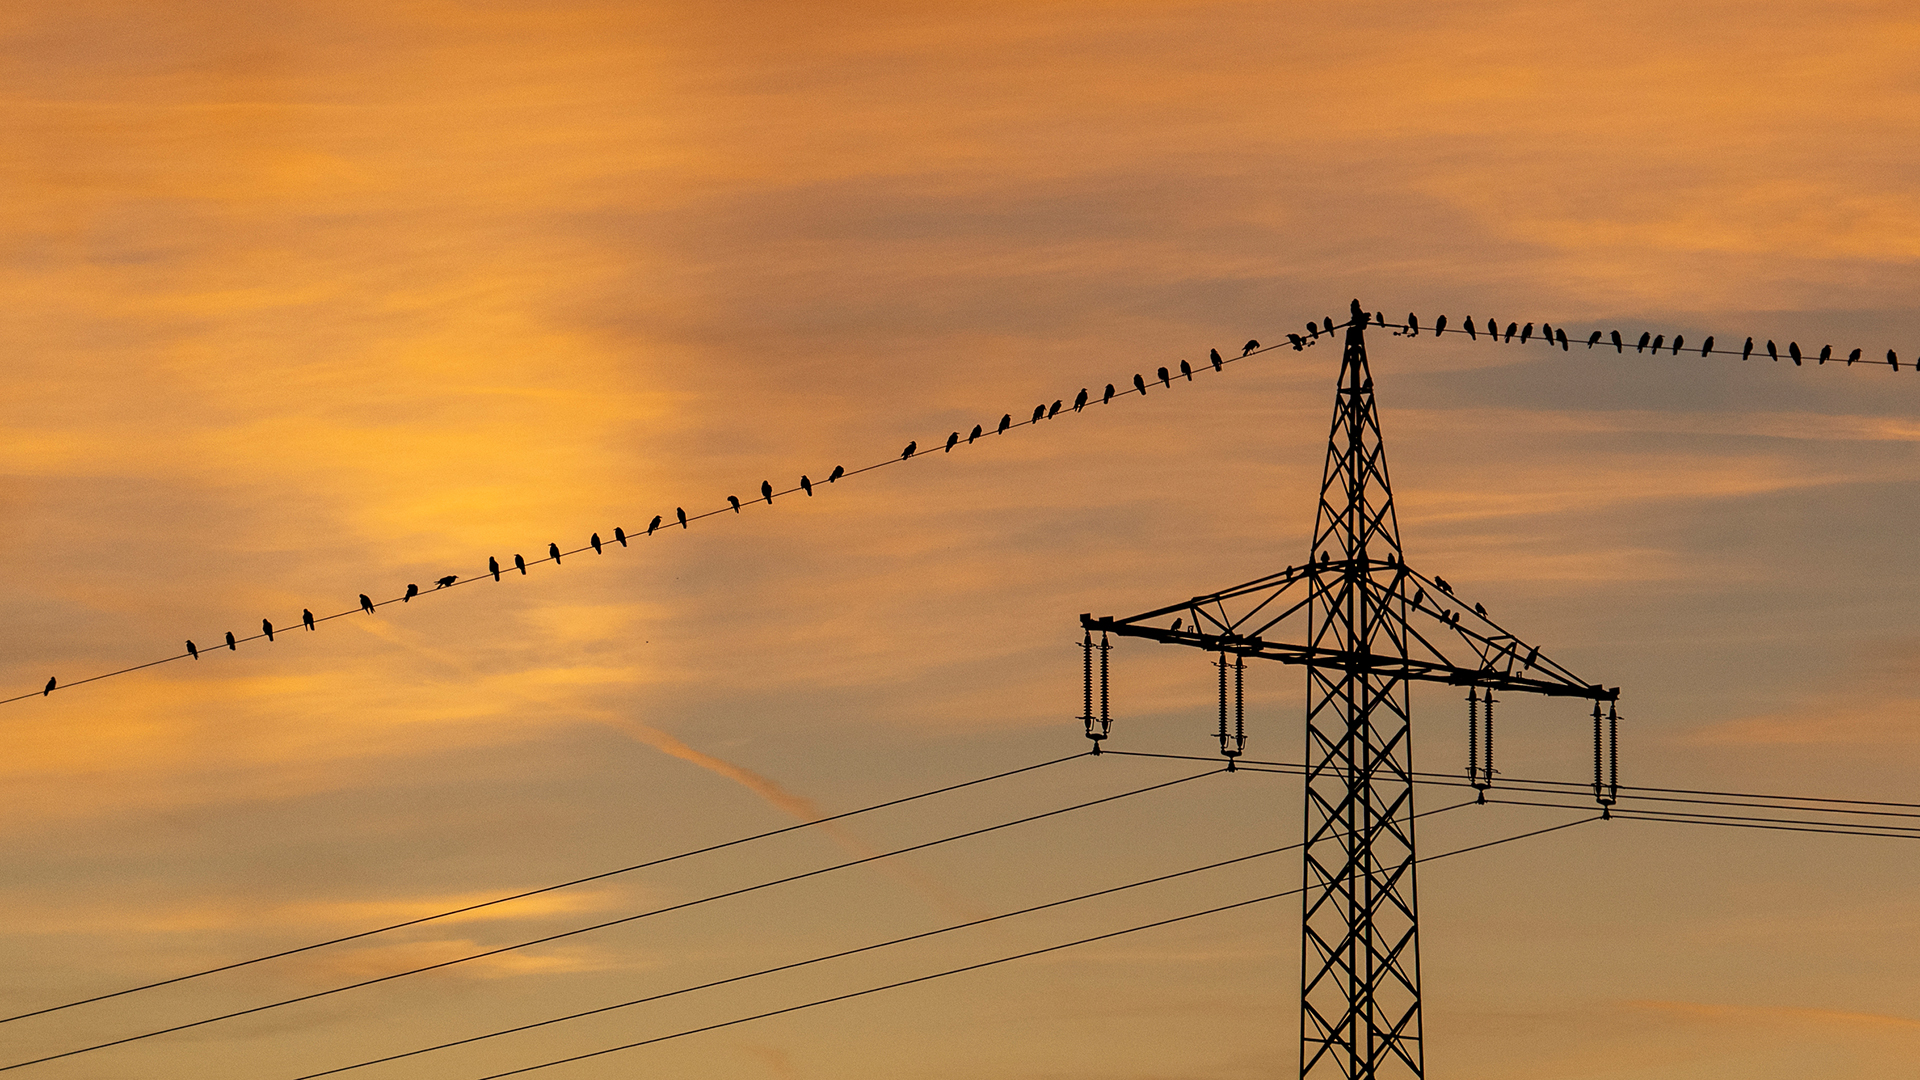 Vögel sitzen im Sonnenuntergang auf einer Stromleitung.  | picture alliance/dpa